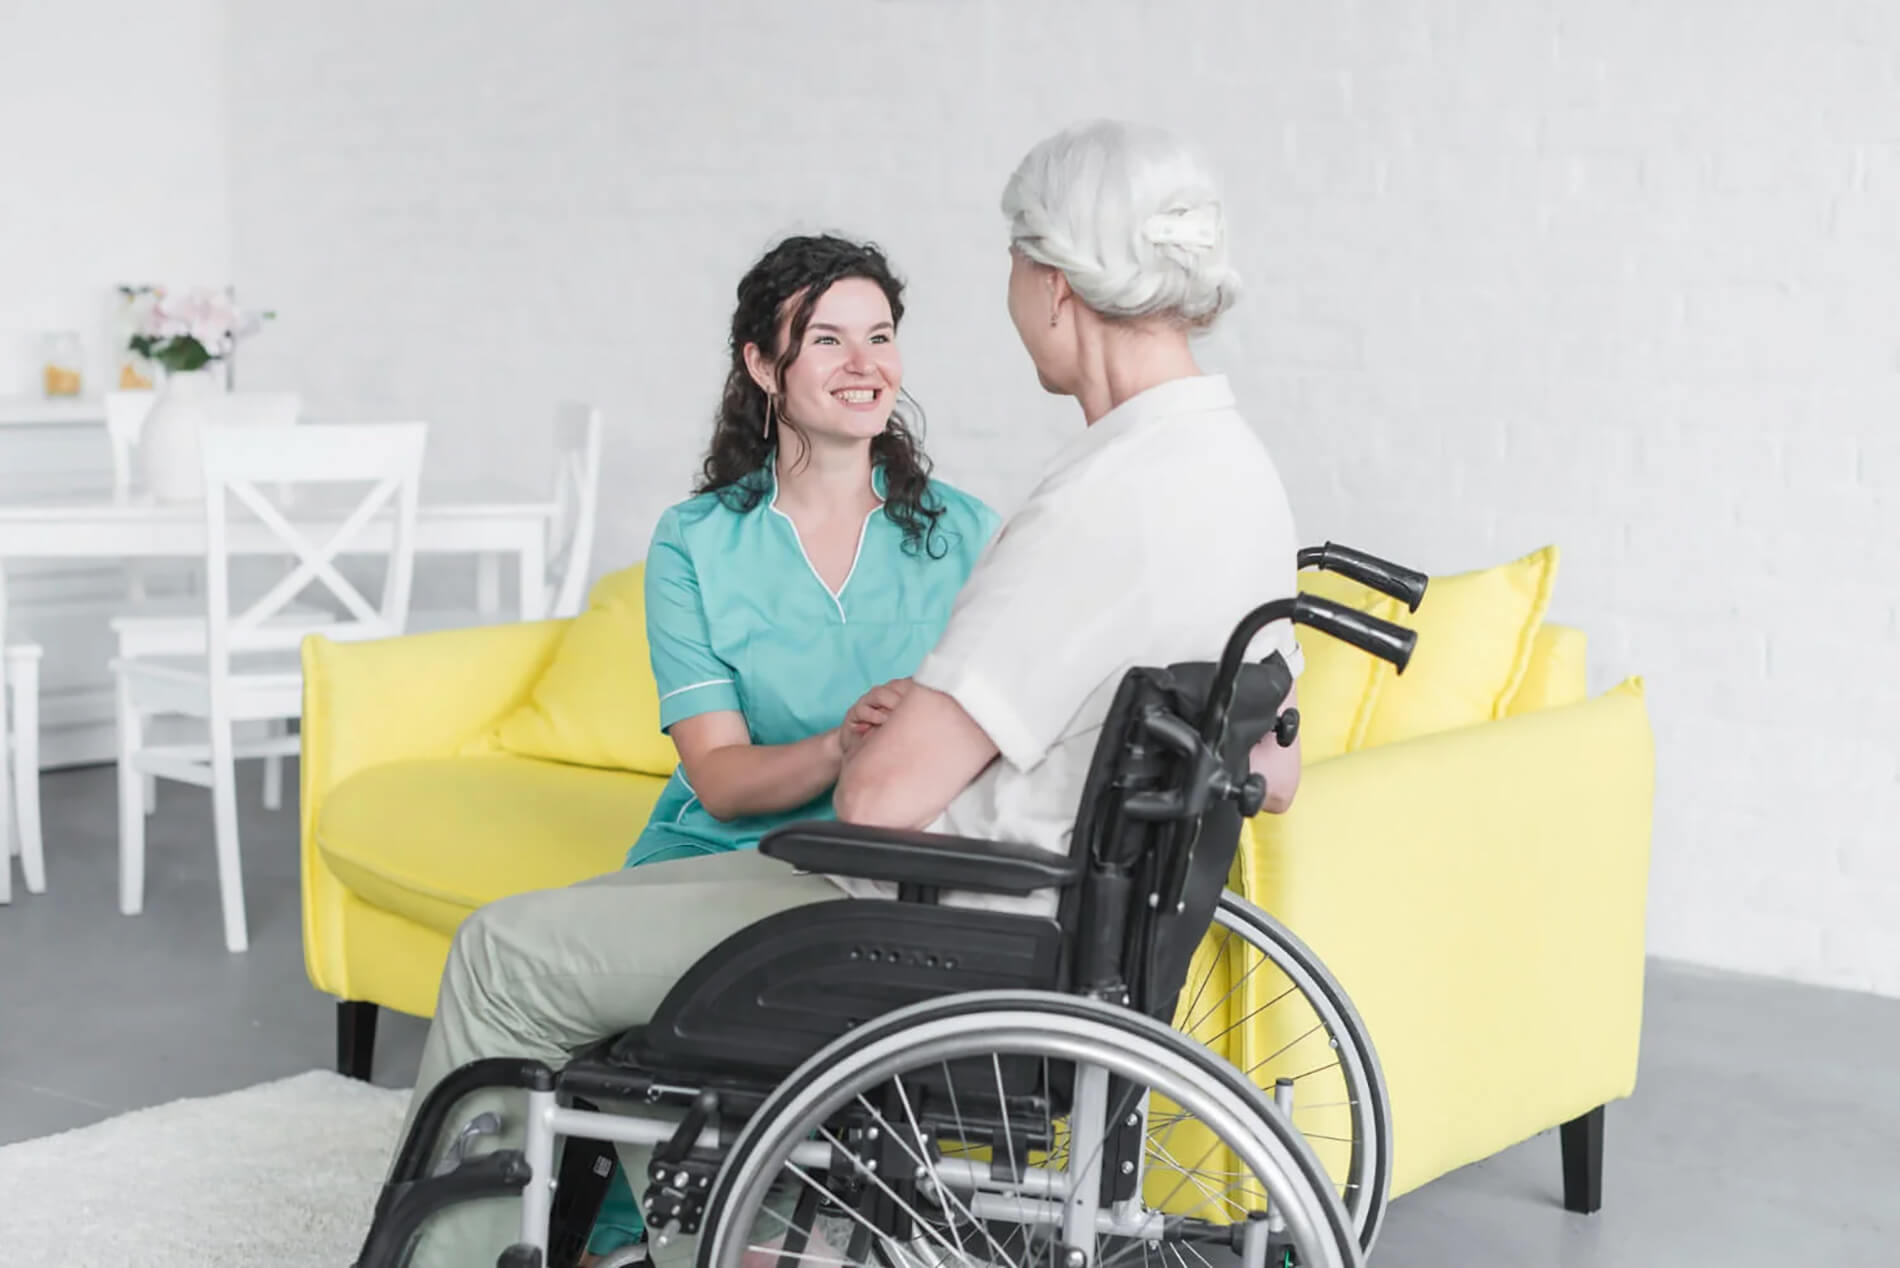 Altenpflegerin: Vielfältige Berufsaussichten in der geriatrischen Pflege